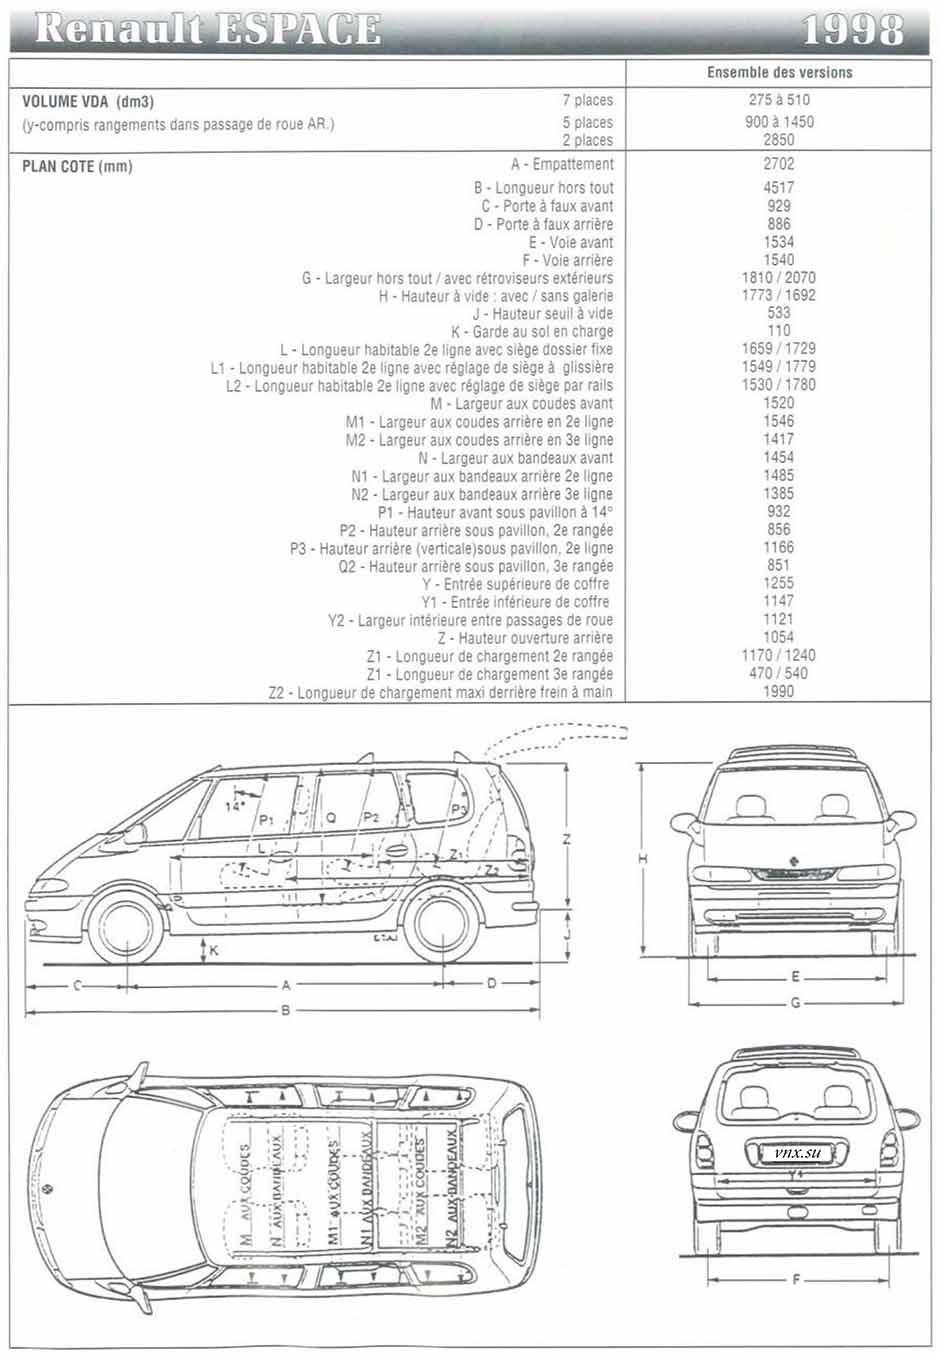 Габаритные размеры Рено Эспейс 1998 (dimensions Renault Espace III)